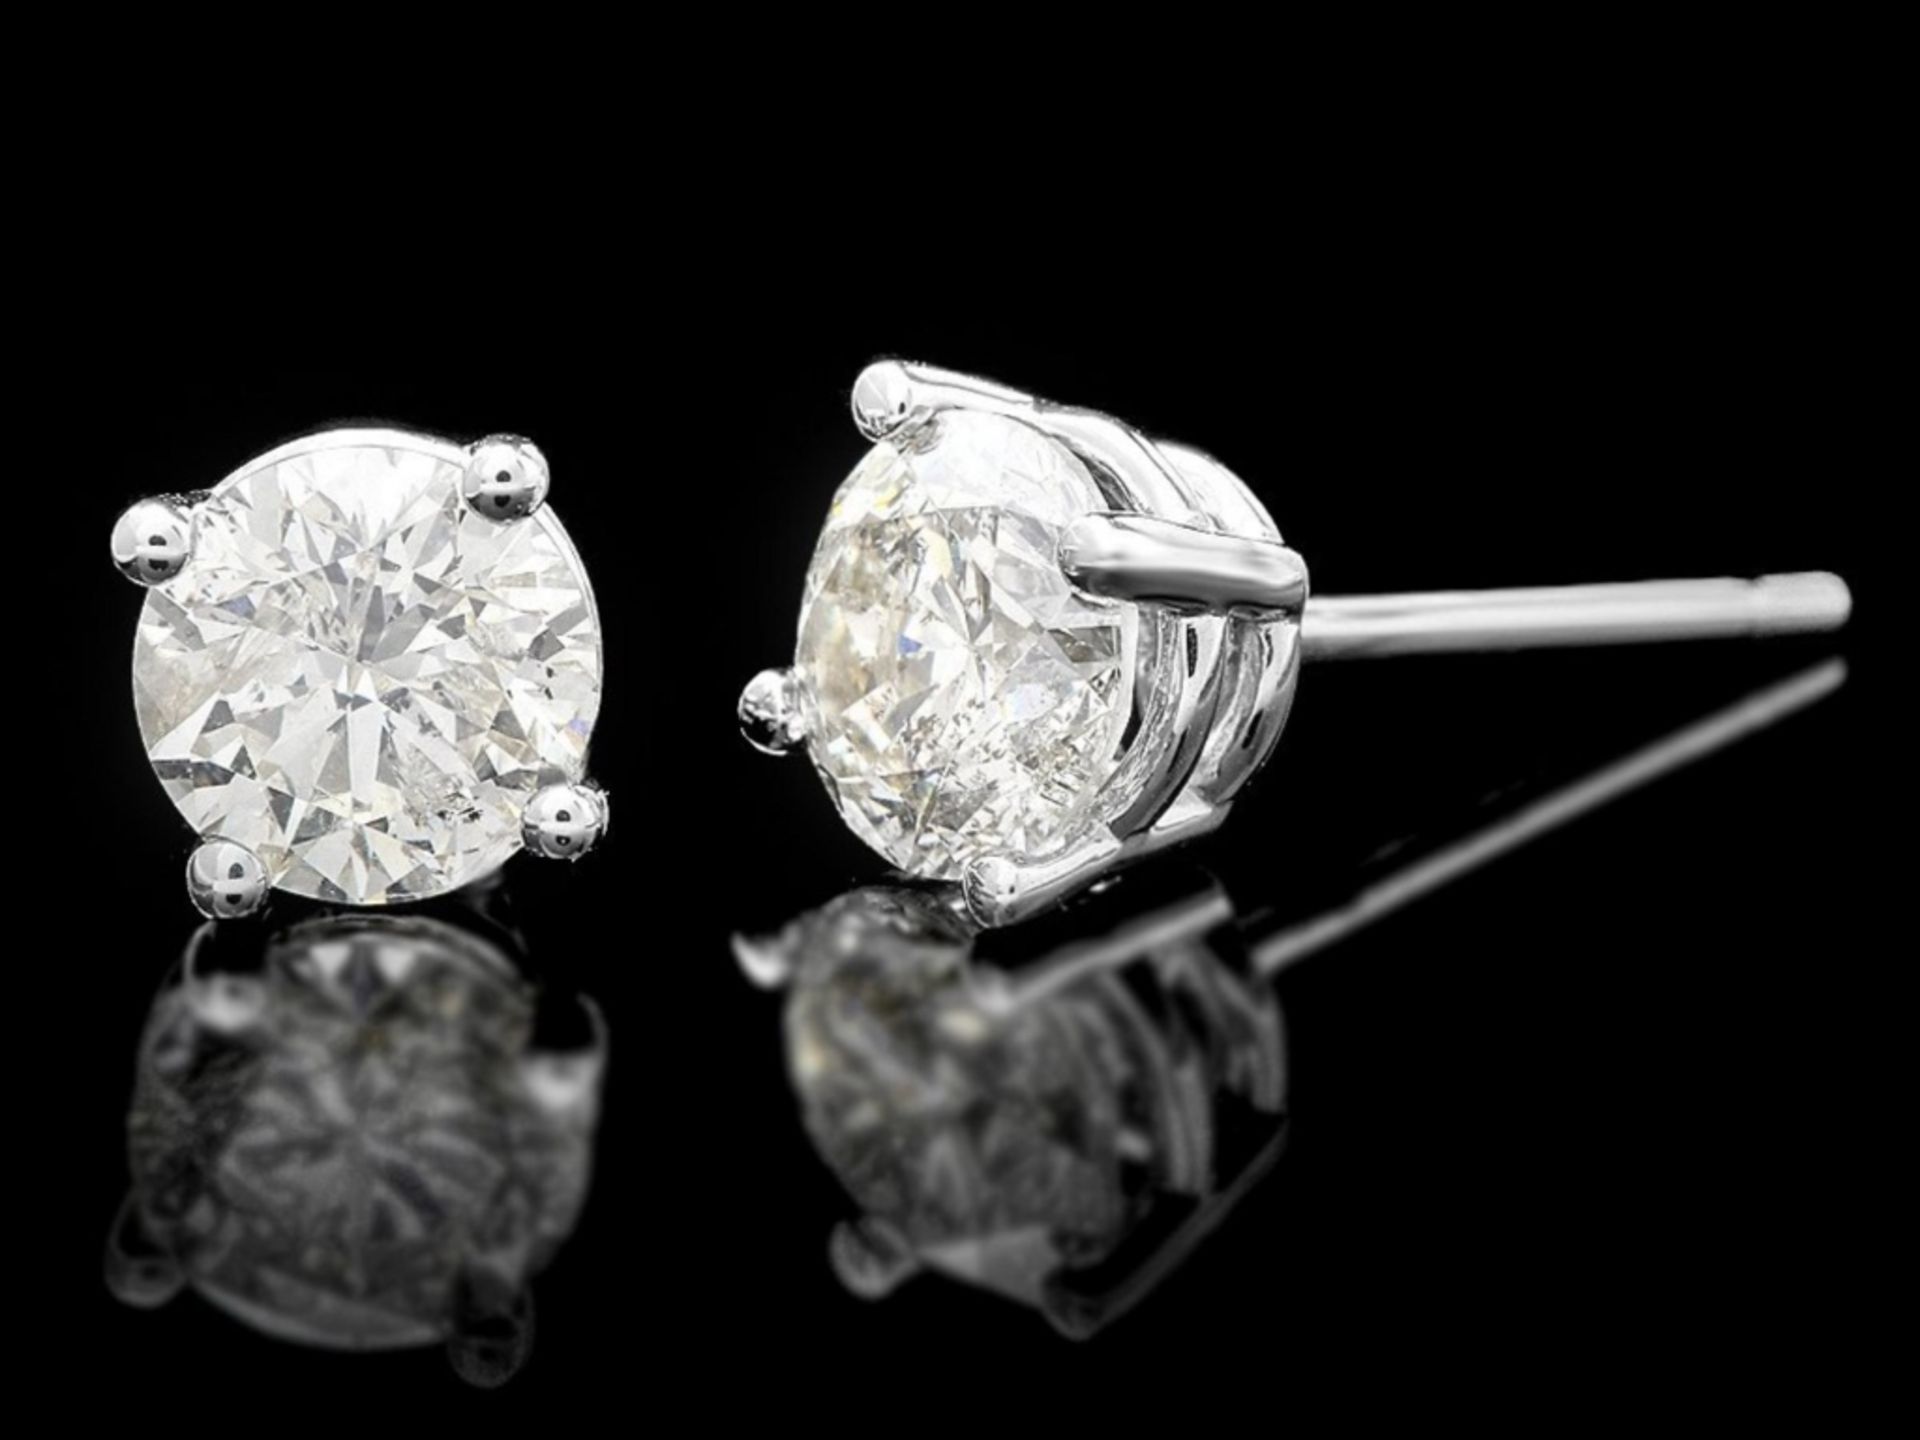 14k White Gold 1.70ct Diamond Earrings - Image 2 of 2